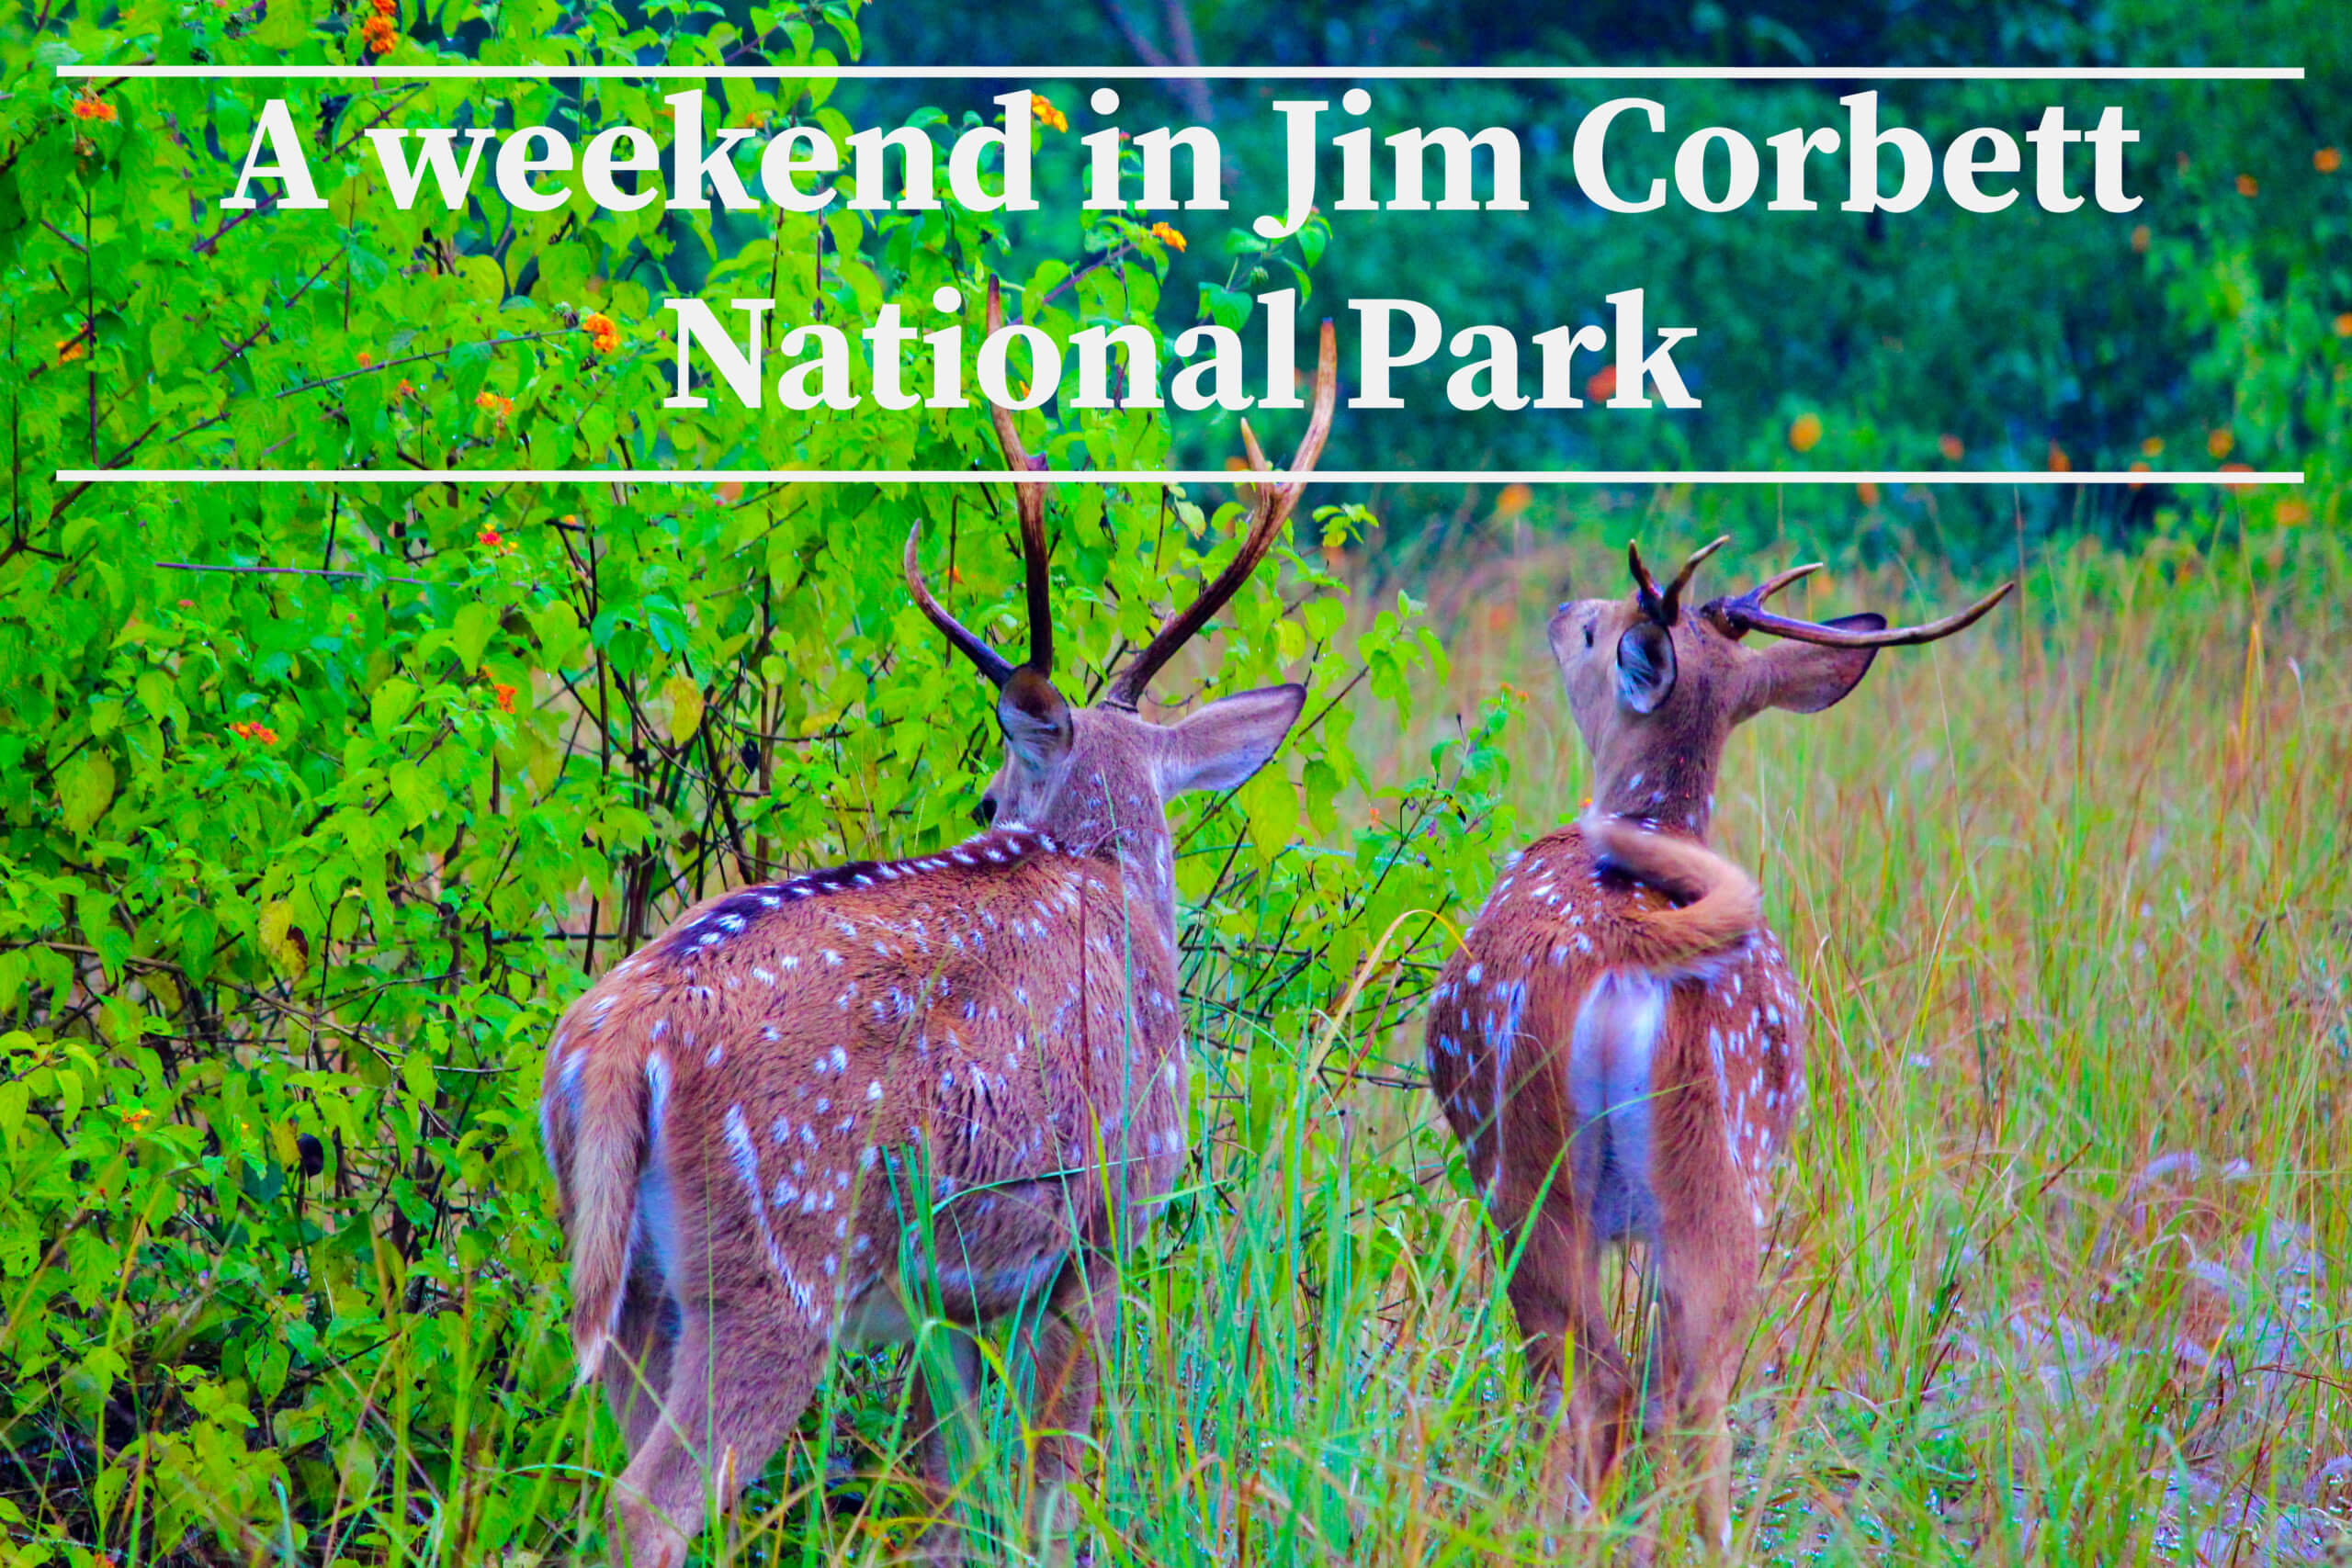 Jim Corbett National Park